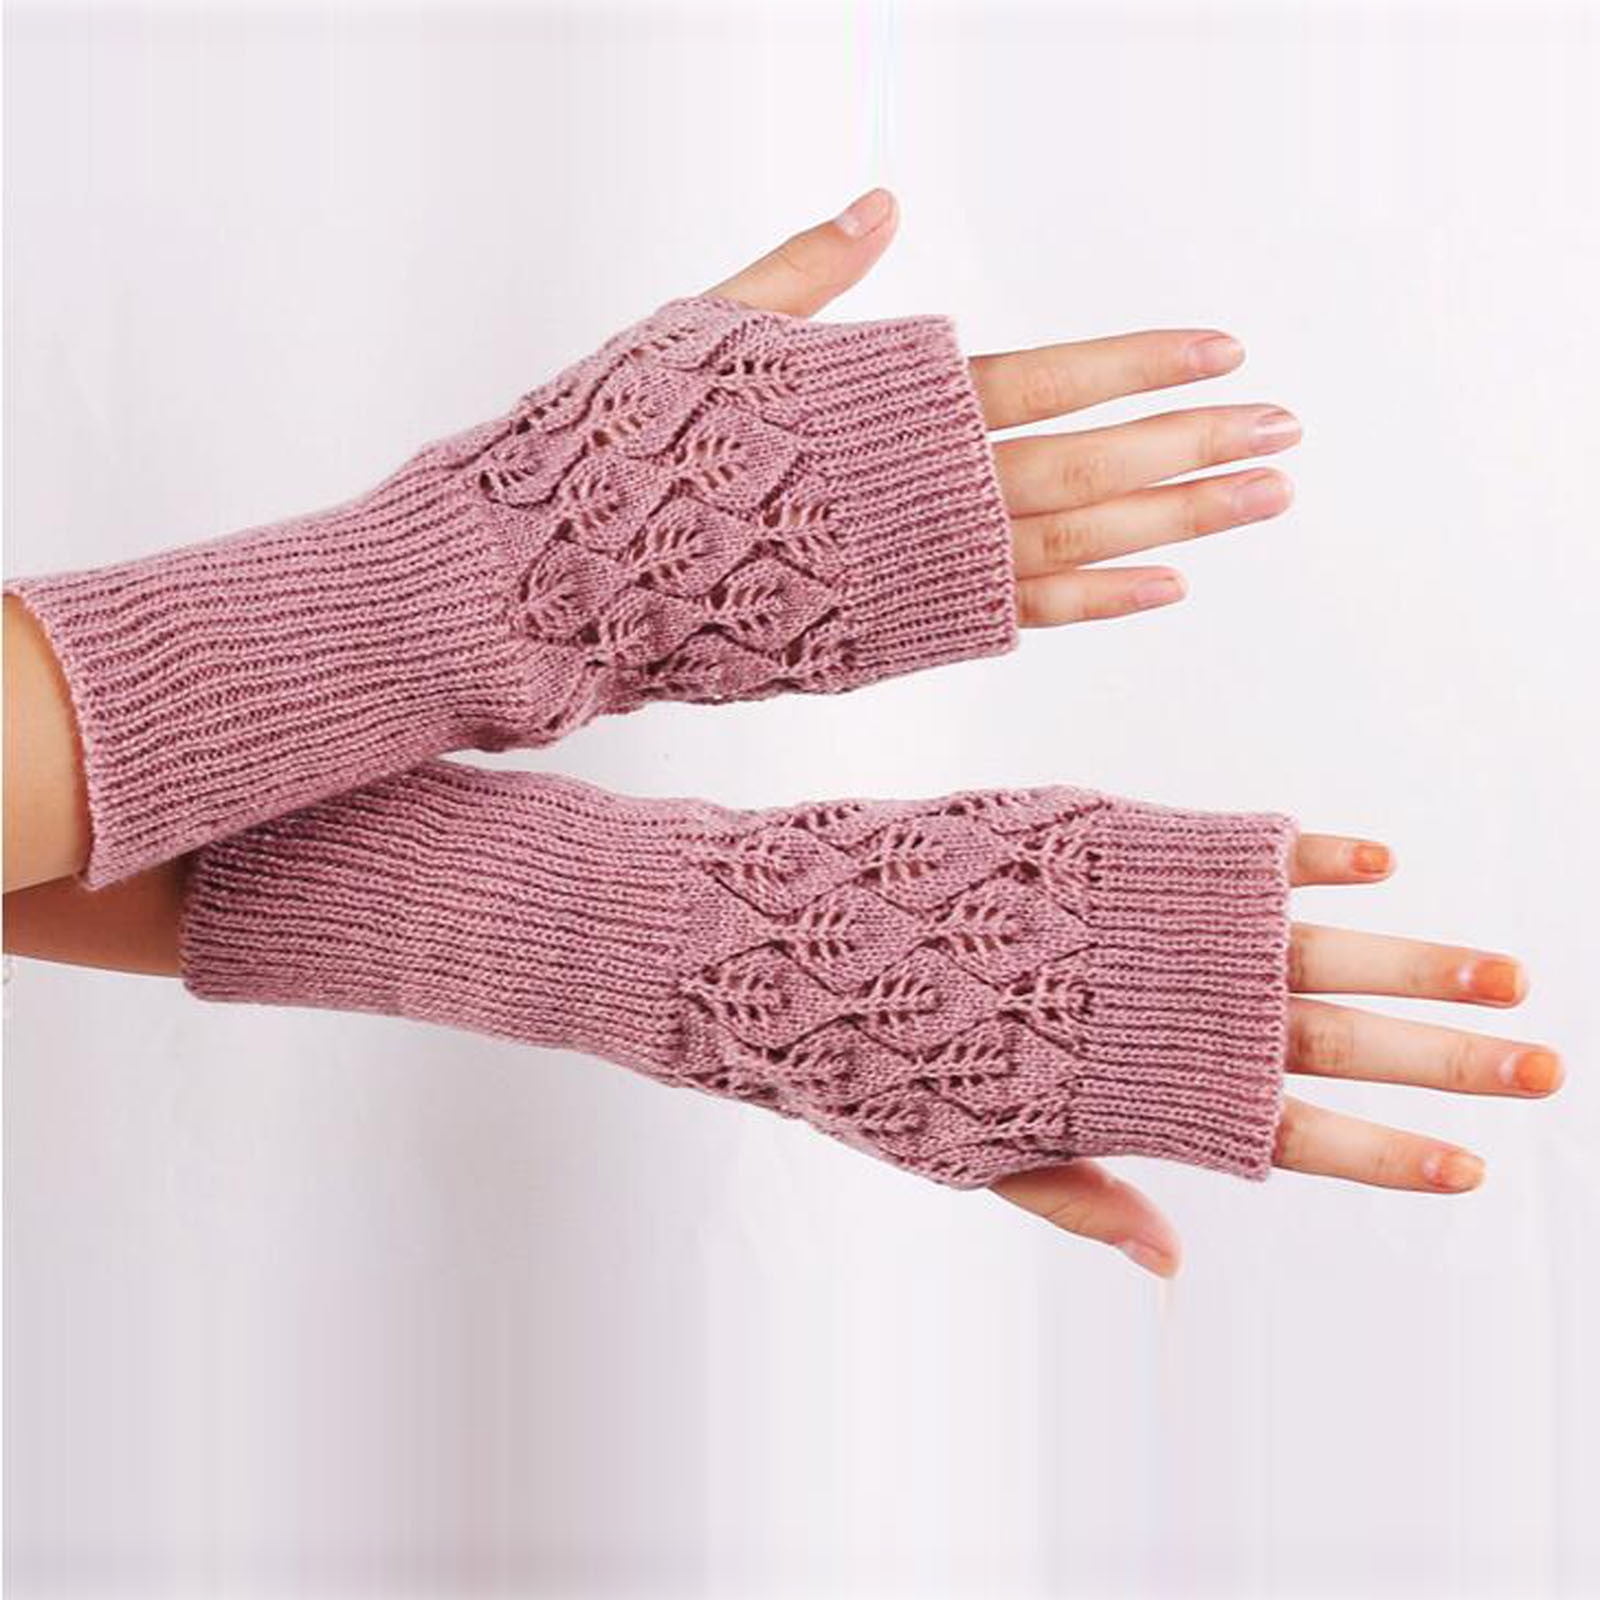 Ladies Women Winter Soft Knitted Hand Wrist Warmer Warm Gloves Mittens UK Seller 